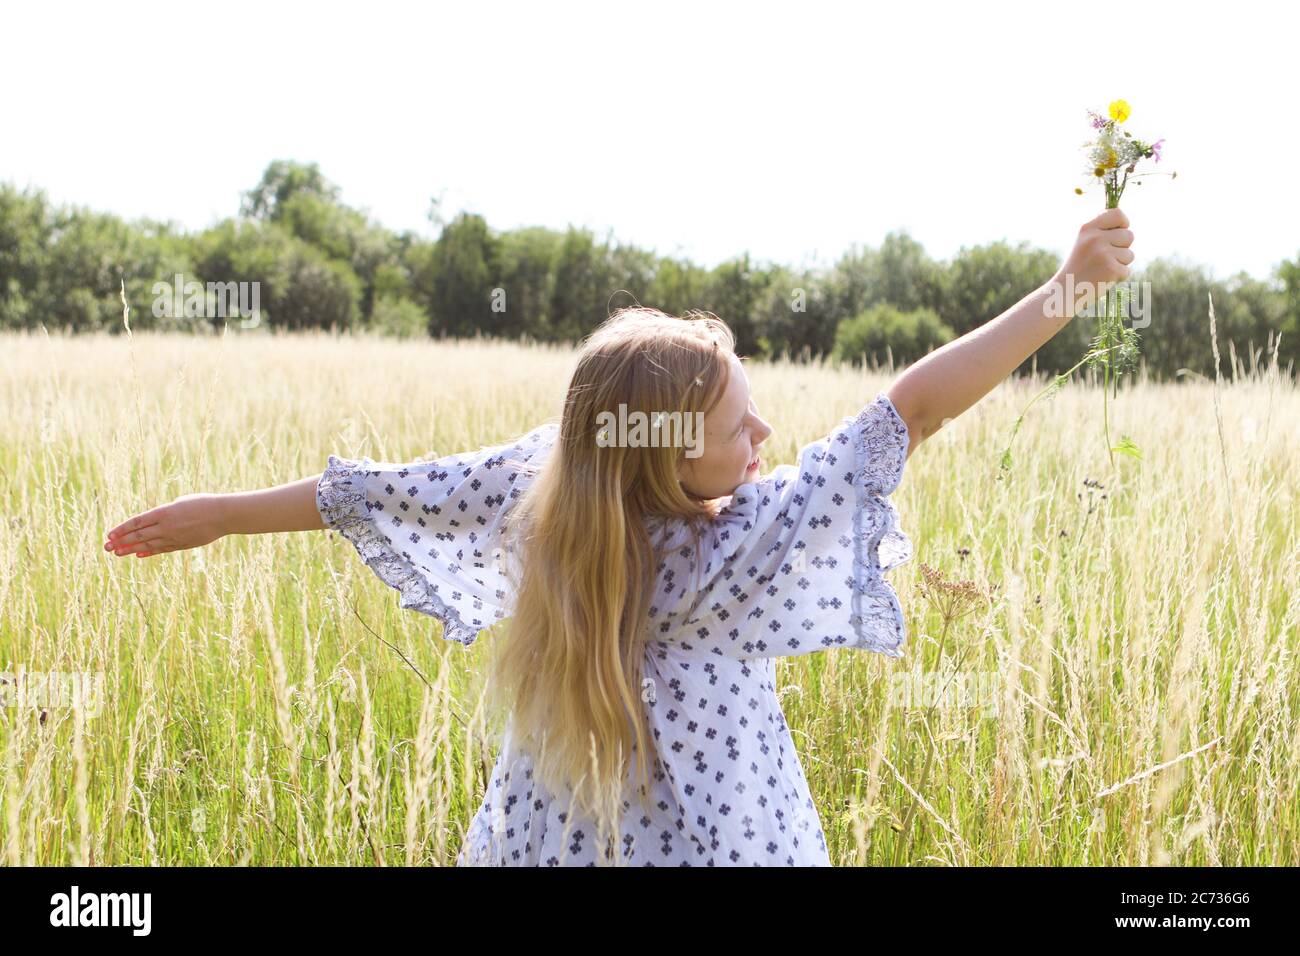 Una giovane ragazza hippy graziosa con catena daisy in capelli biondi tiene un poy di fiori selvatici con le braccia estese n un campo di pascolo in estate Foto Stock